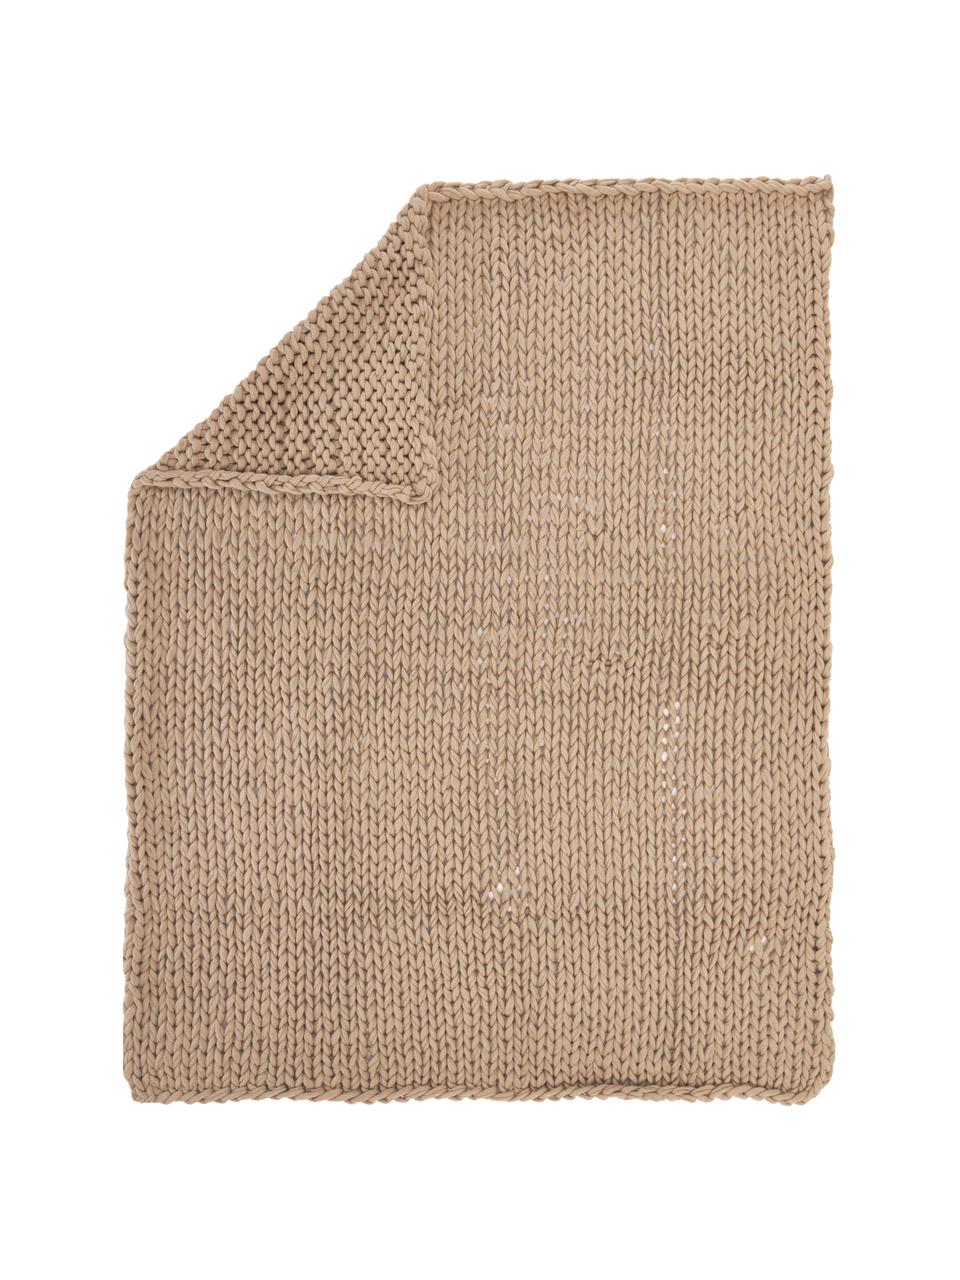 Handgemachte Grobstrick-Decke Adyna in Beige, 100% Polyacryl, Beige, B 130 x L 170 cm